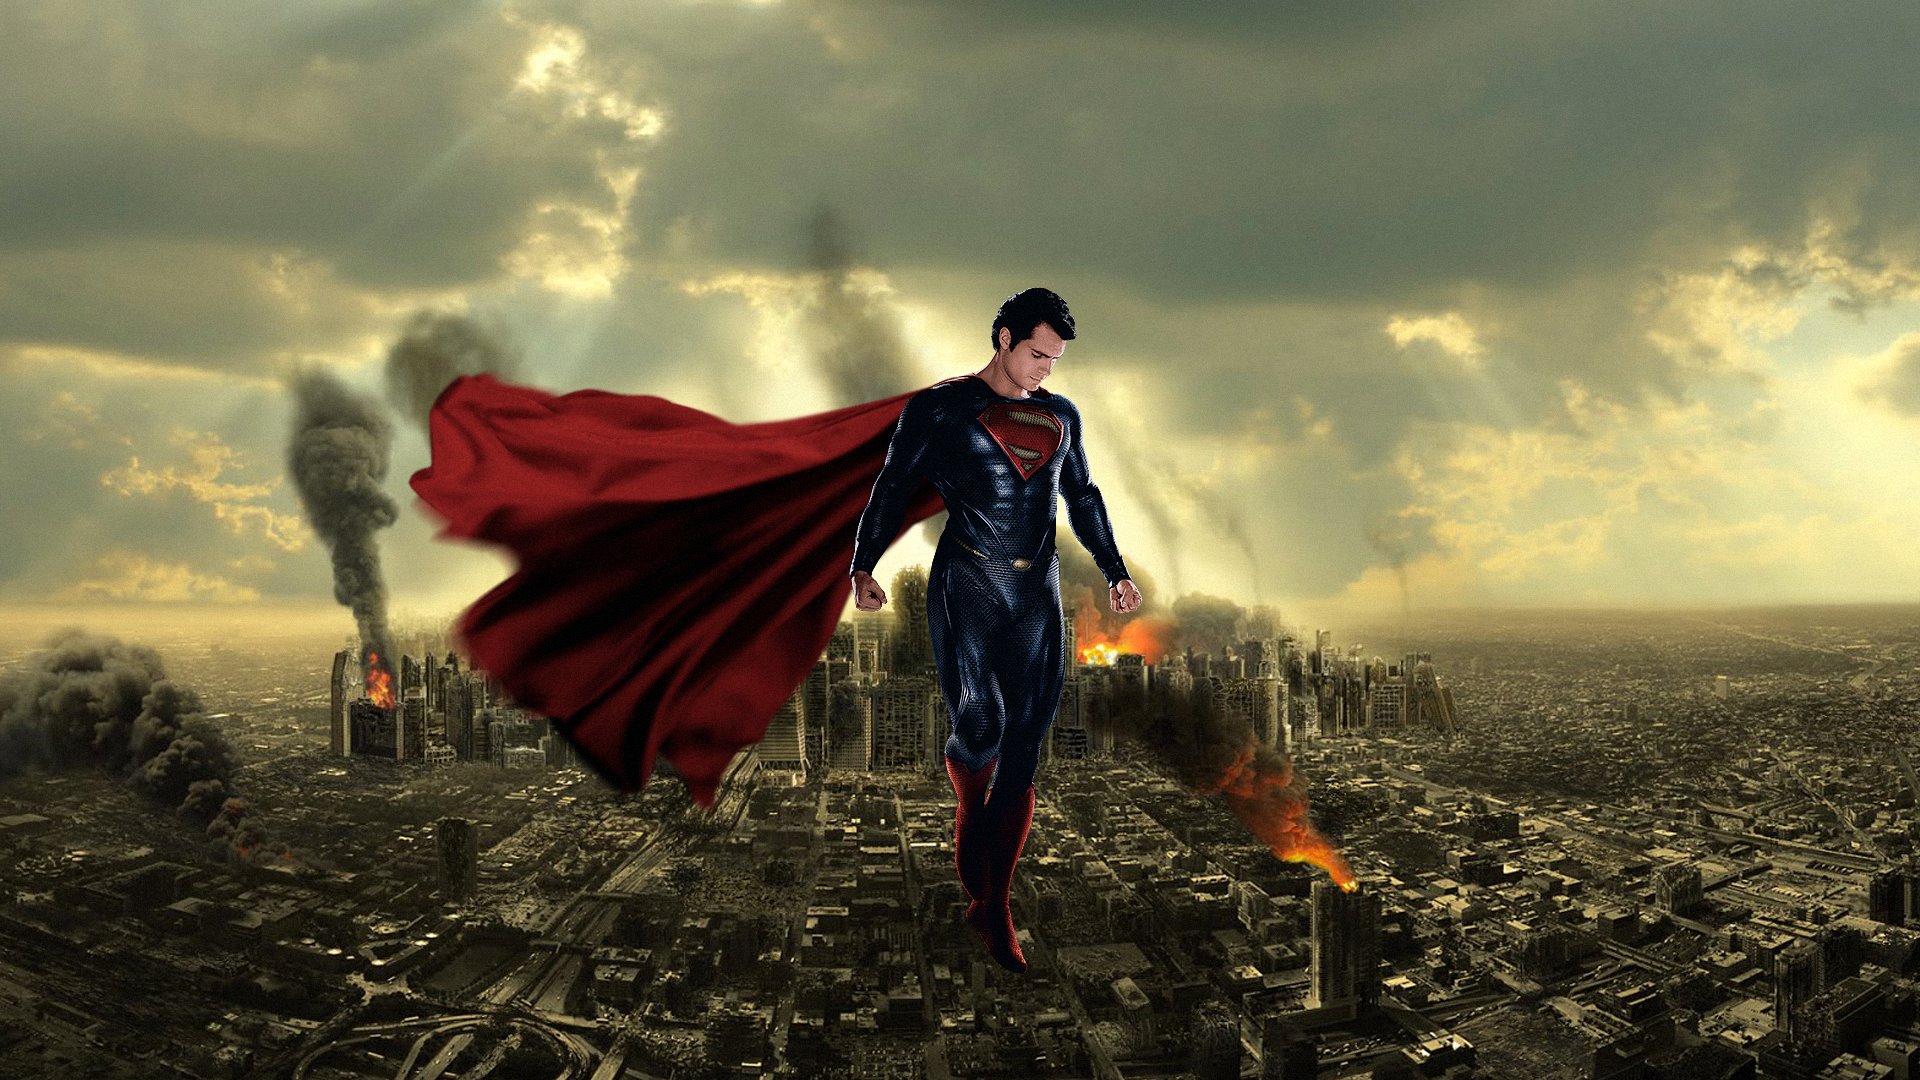 fond d'écran superman,superman,super héros,personnage fictif,ligue de justice,compositing numérique